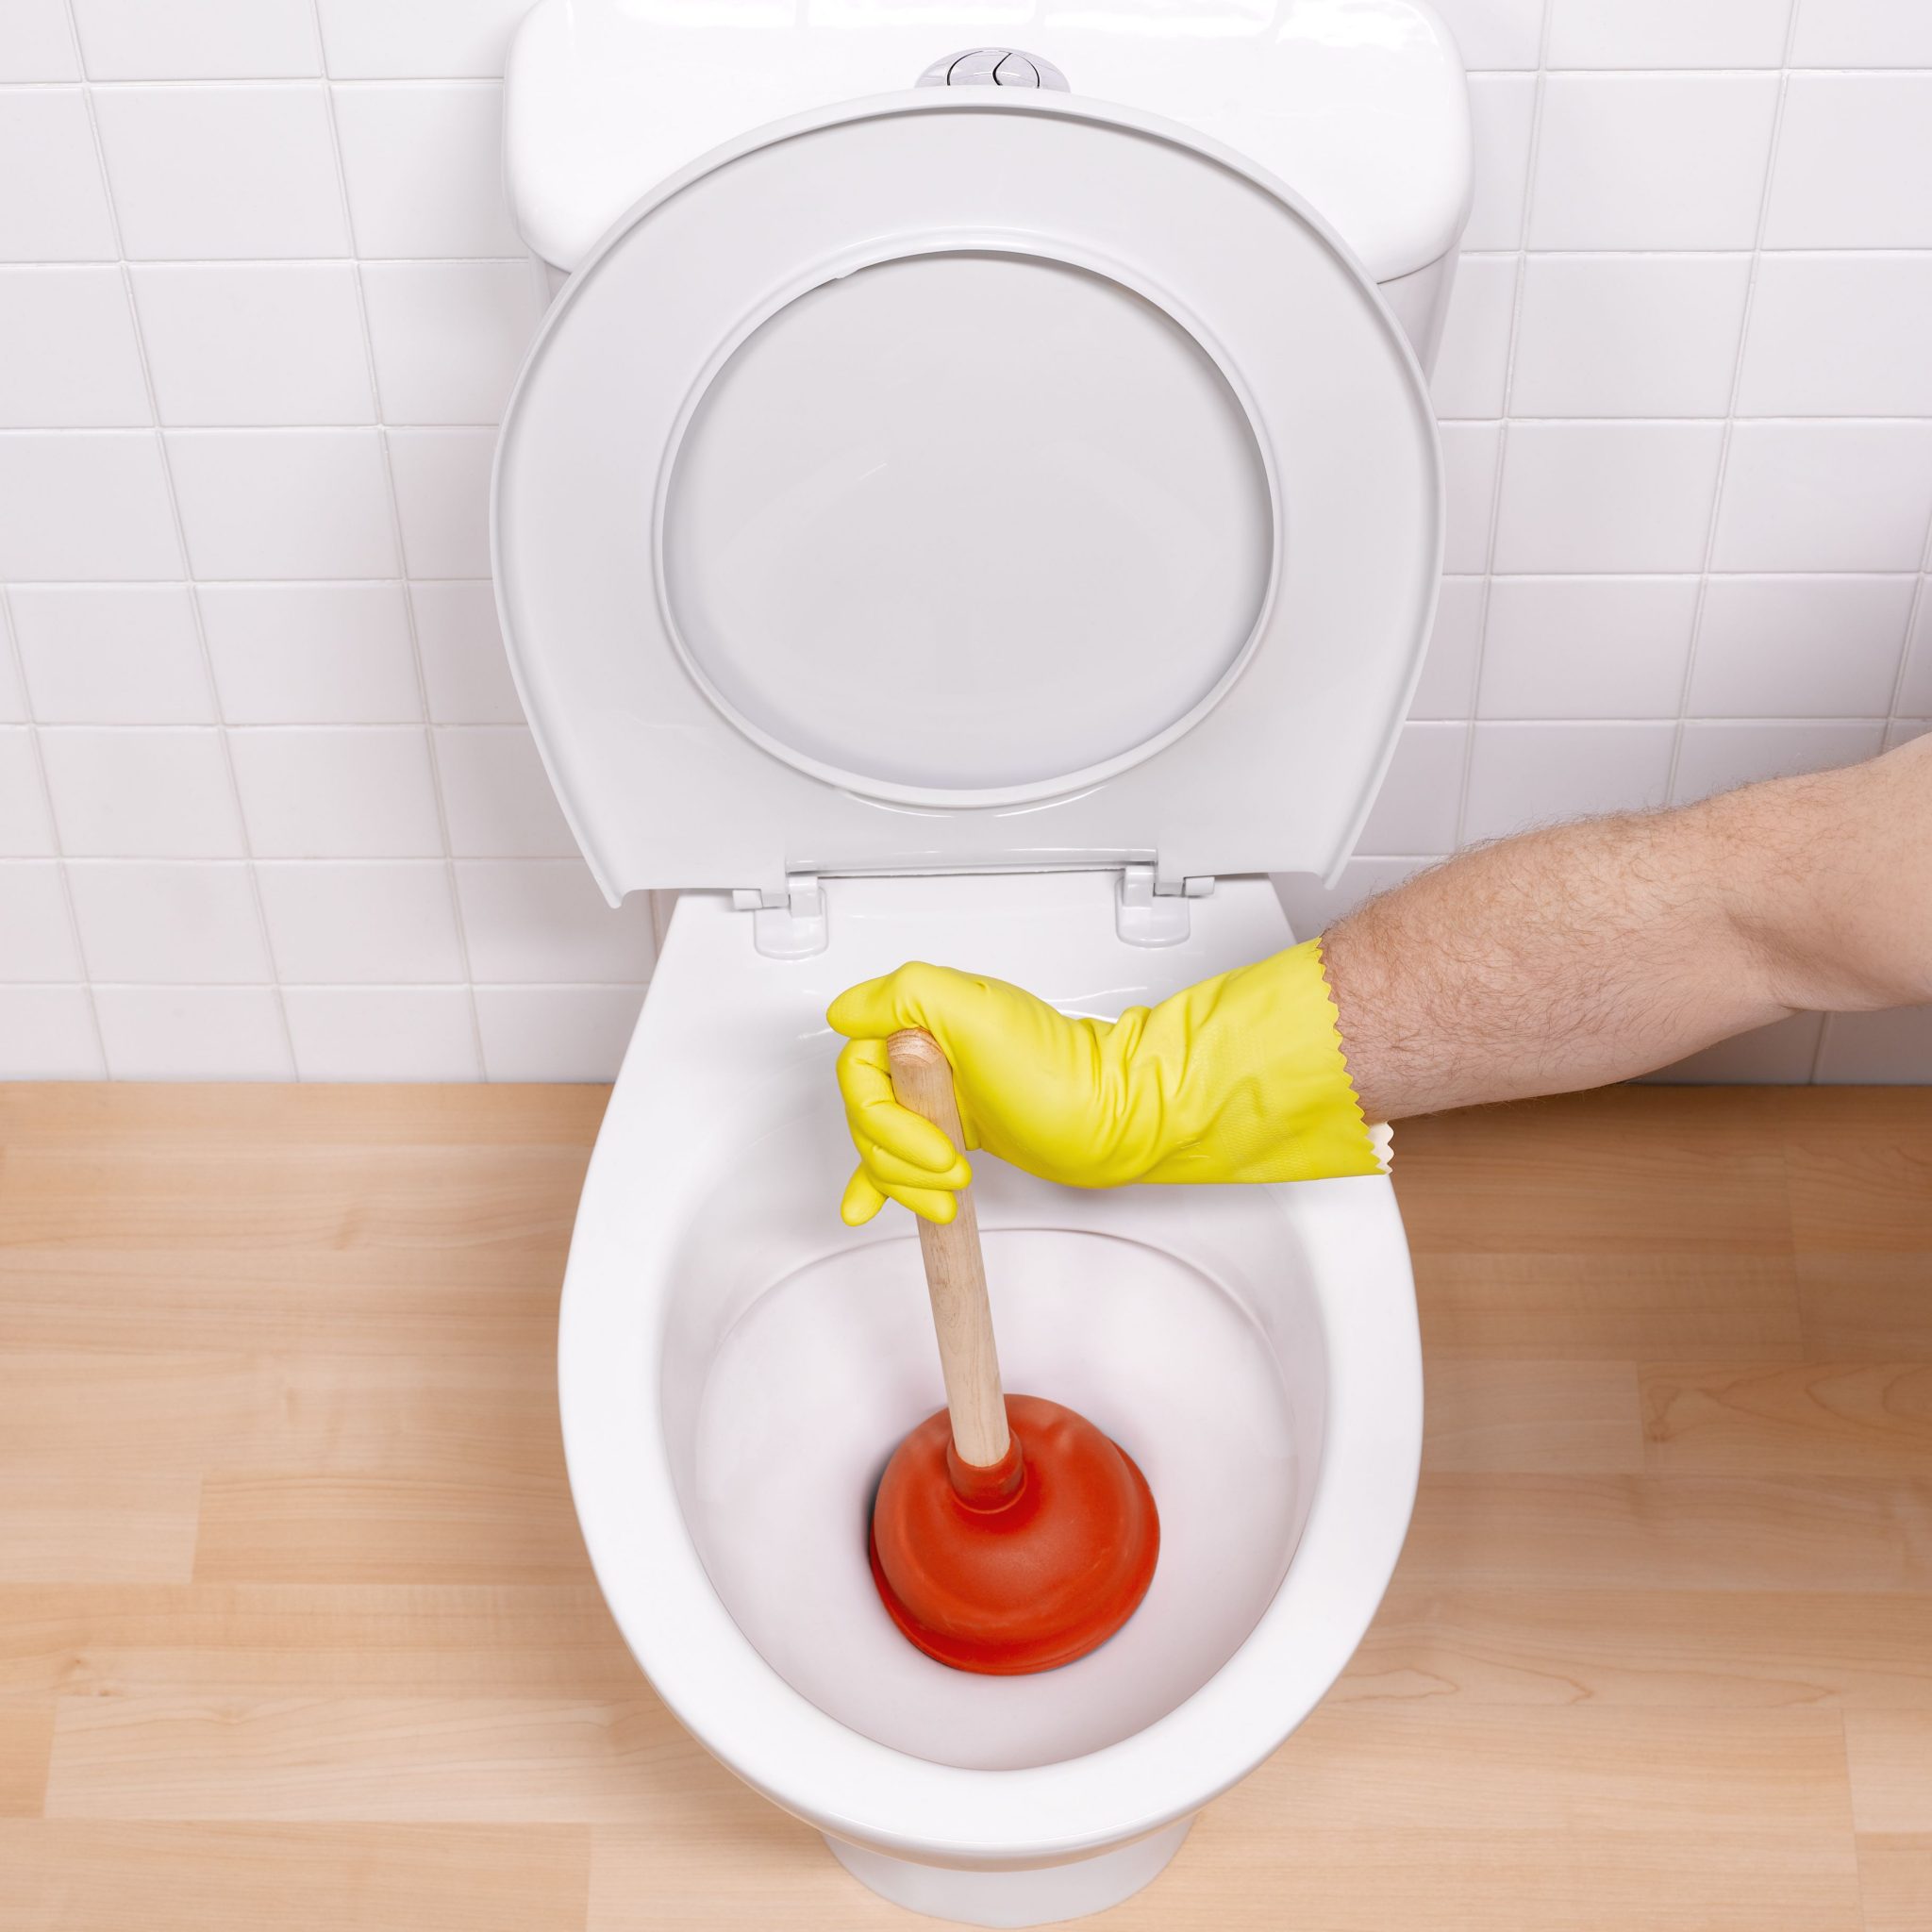 man-sticking-toilet-plunger-in-toilet-bowl-82370430-581caac55f9b581c0b263c82